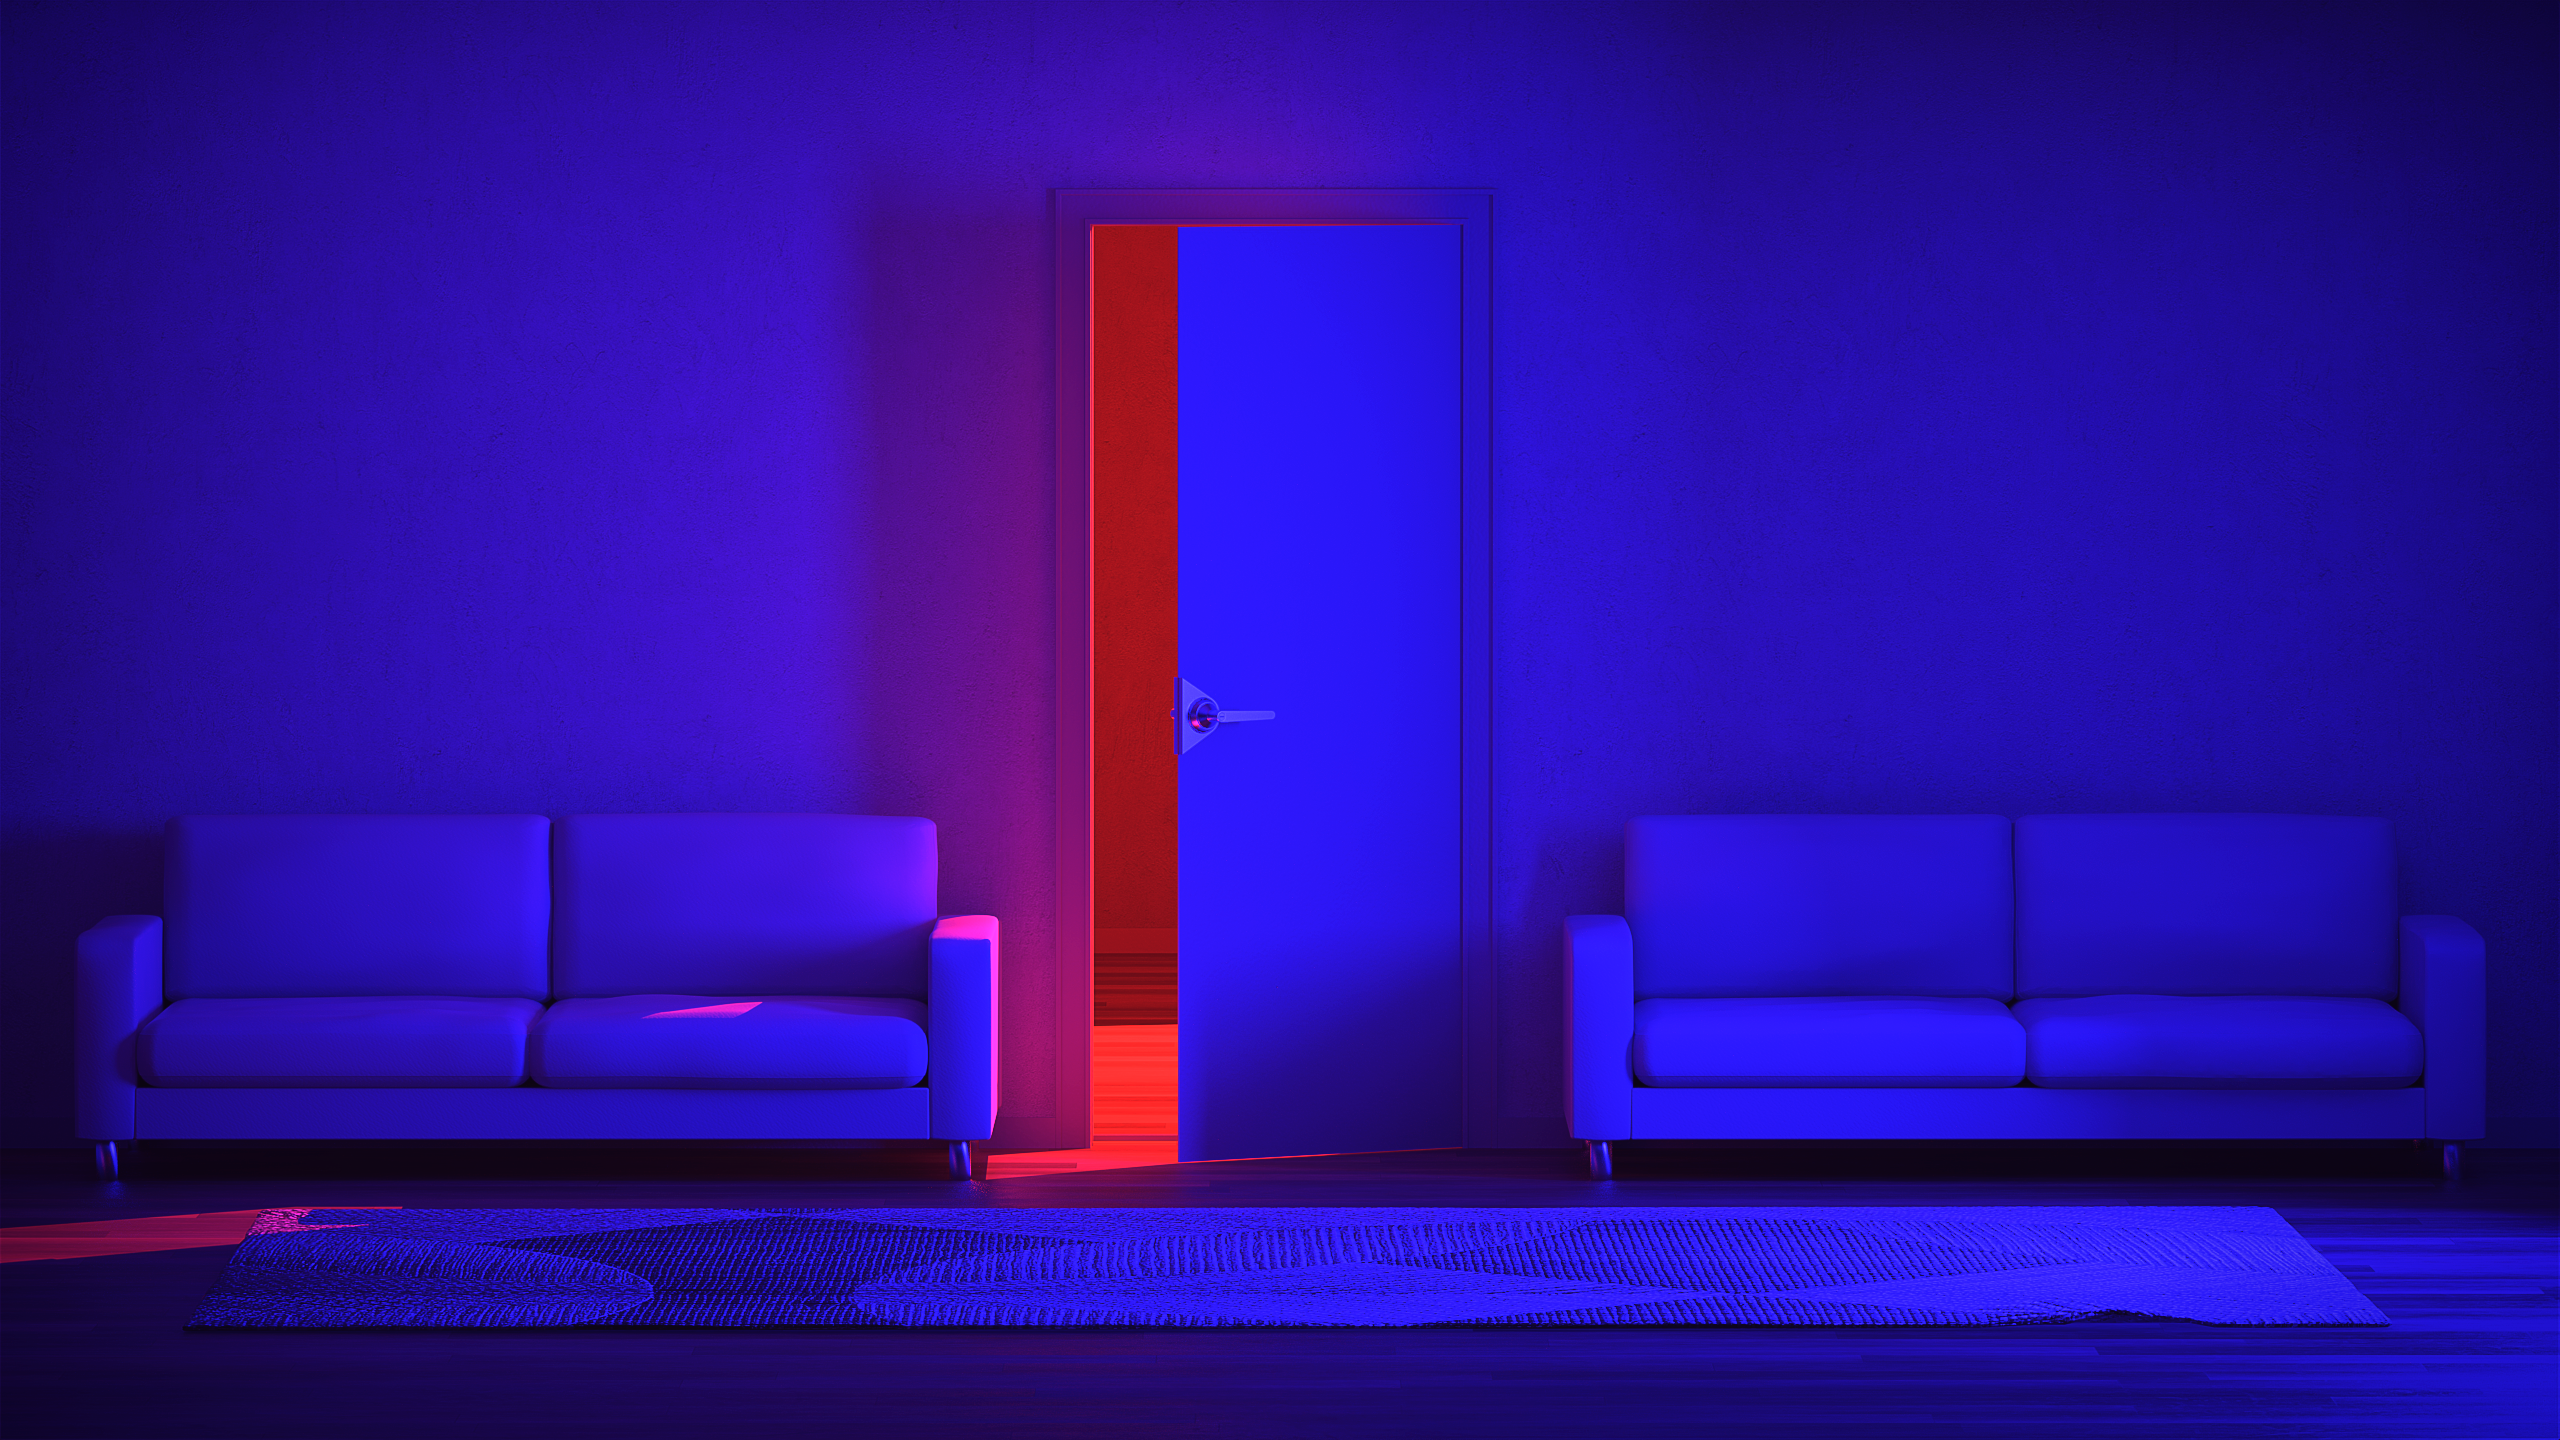 Neon Neon Lights CGi Digital Art Render Red Blue Door Couch Carpet 2560x1440